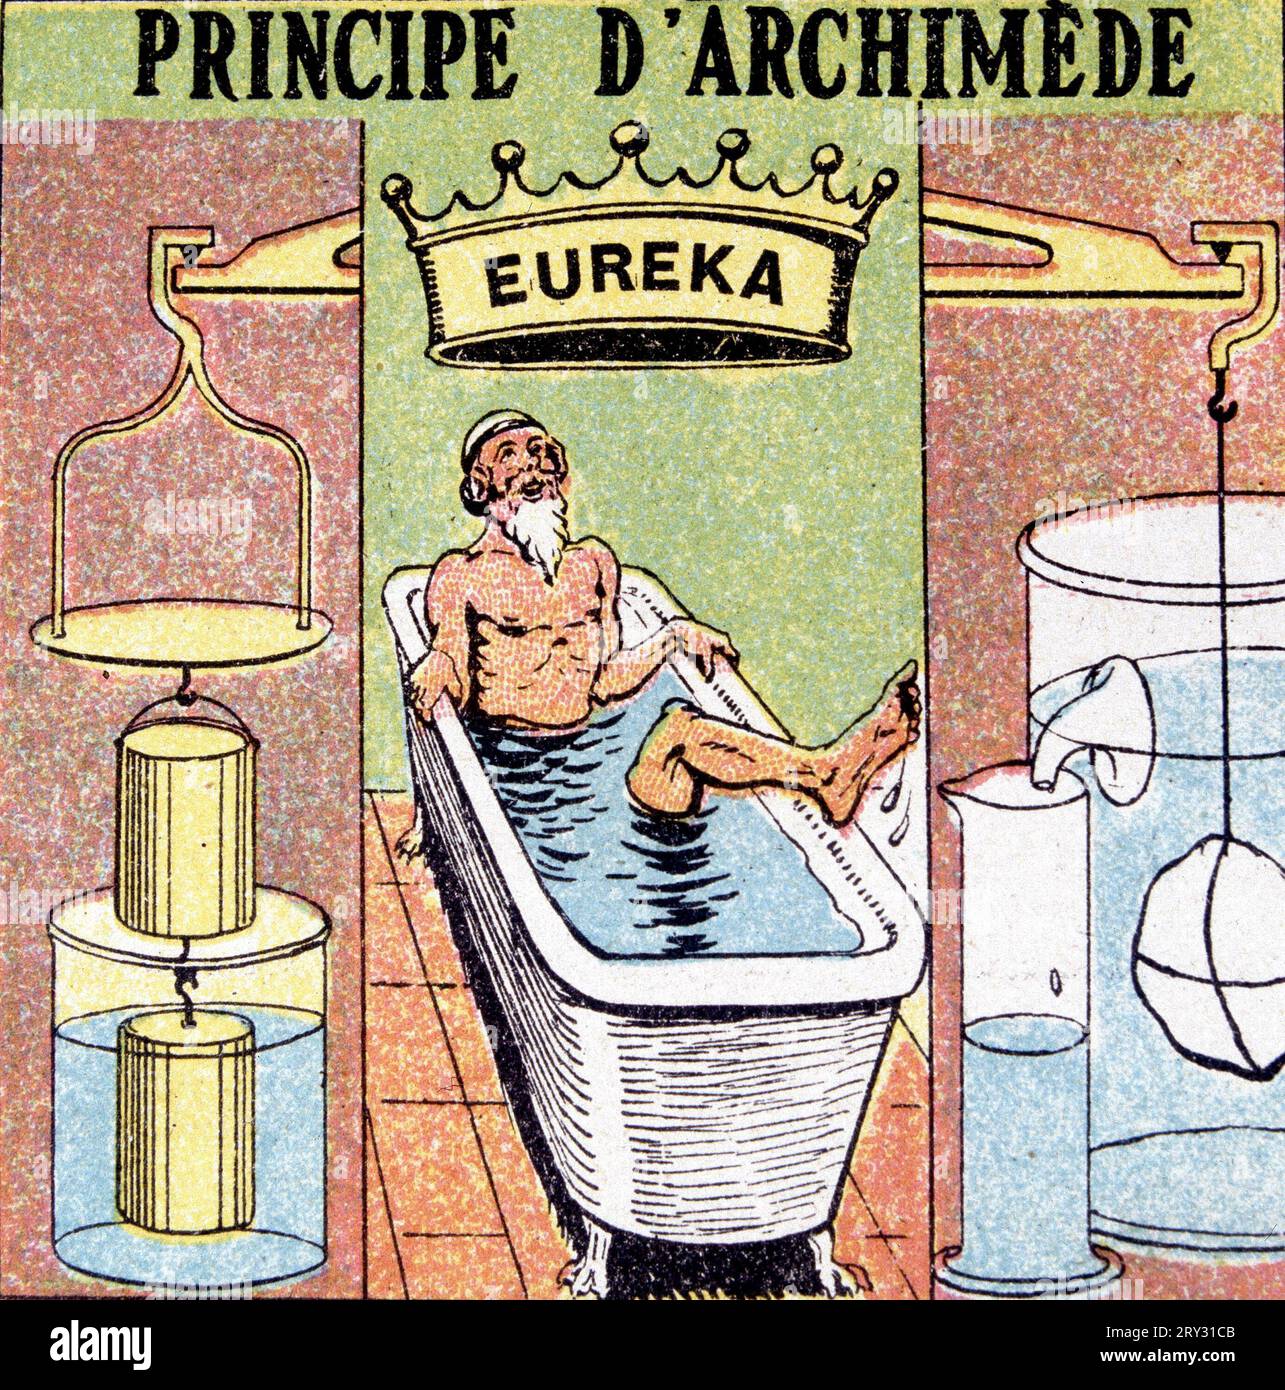 Le principe d'Archimède (pousser les corps dans l'eau) - eureka Banque D'Images